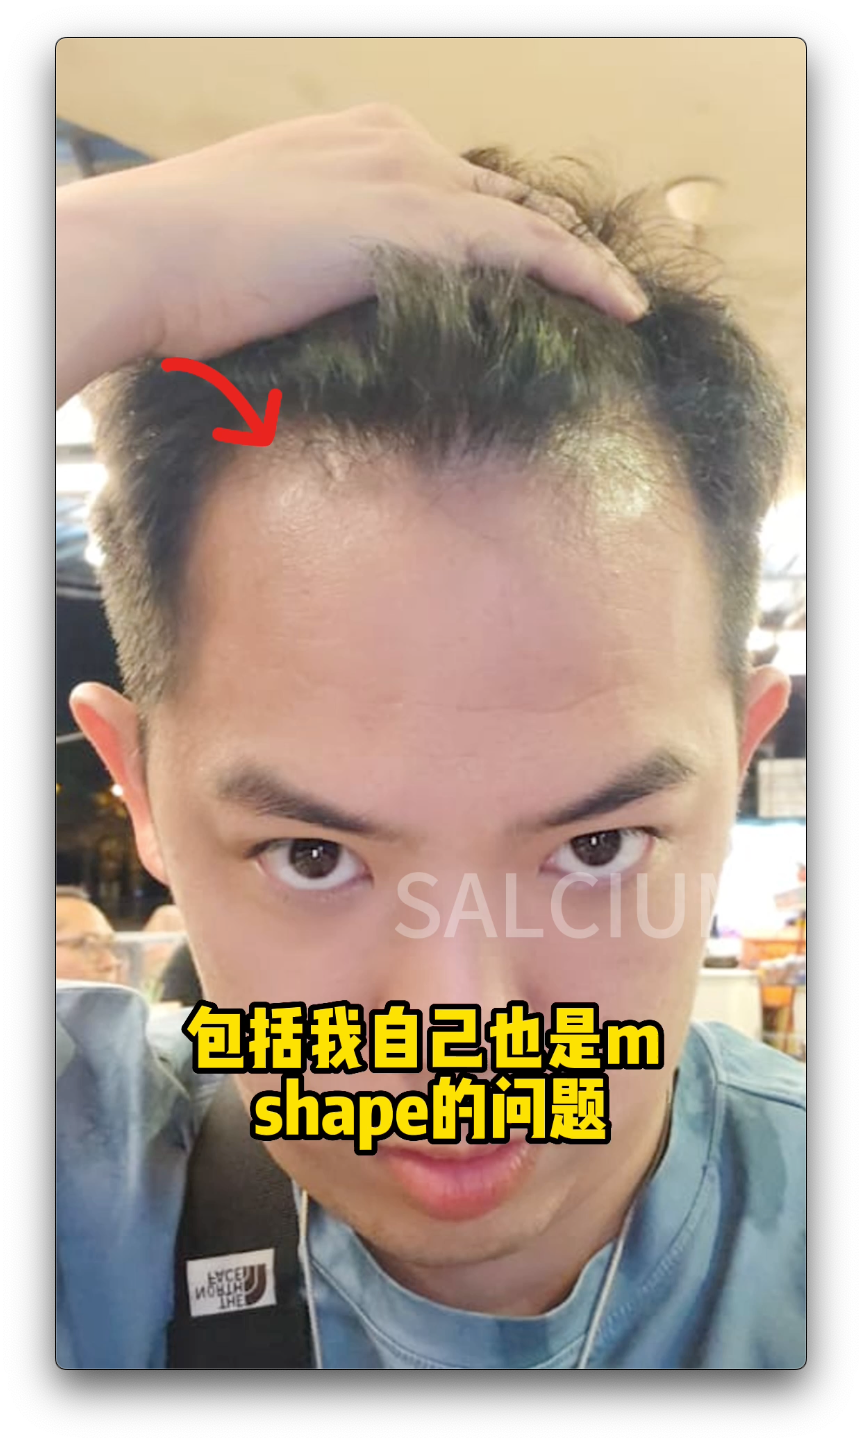 M shape 脱发怎么办? M shape hair loss